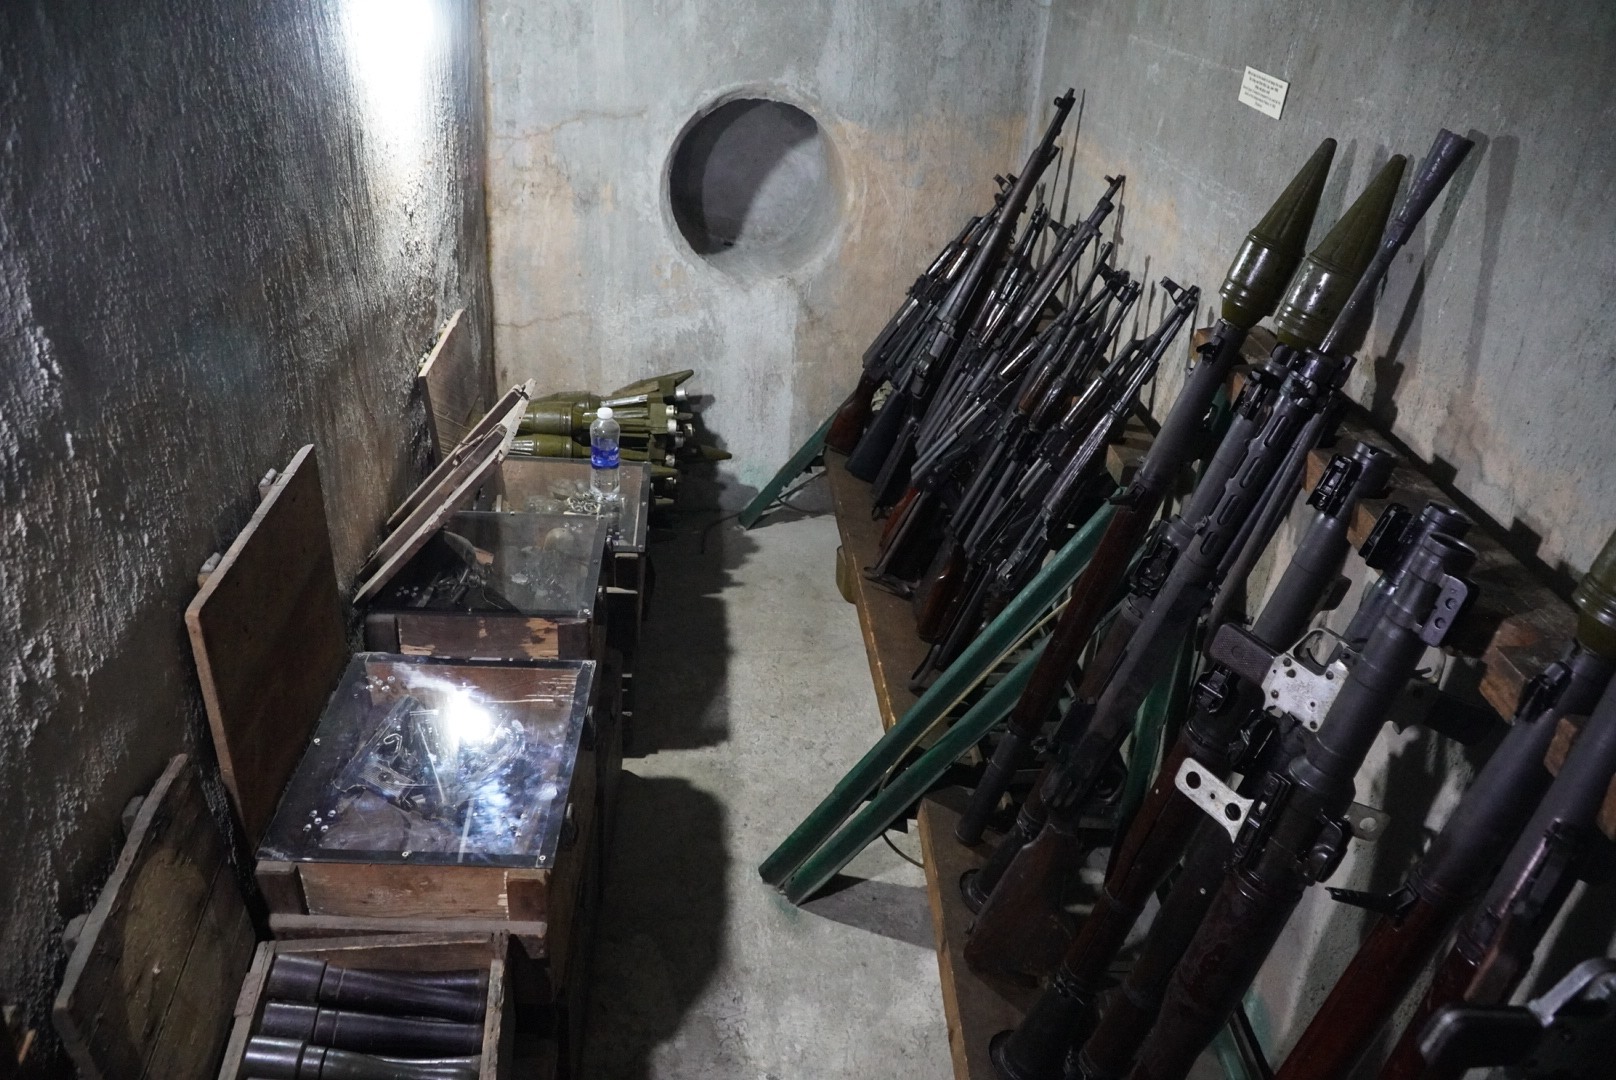 Căn hầm từng là nơi cất giấu hơn 2 tấn vũ khí gồm súng và đầu đạn B40, súng AK, bộc phá, kíp nổ, súng ngắn, lựu đạn, đạn các loại…